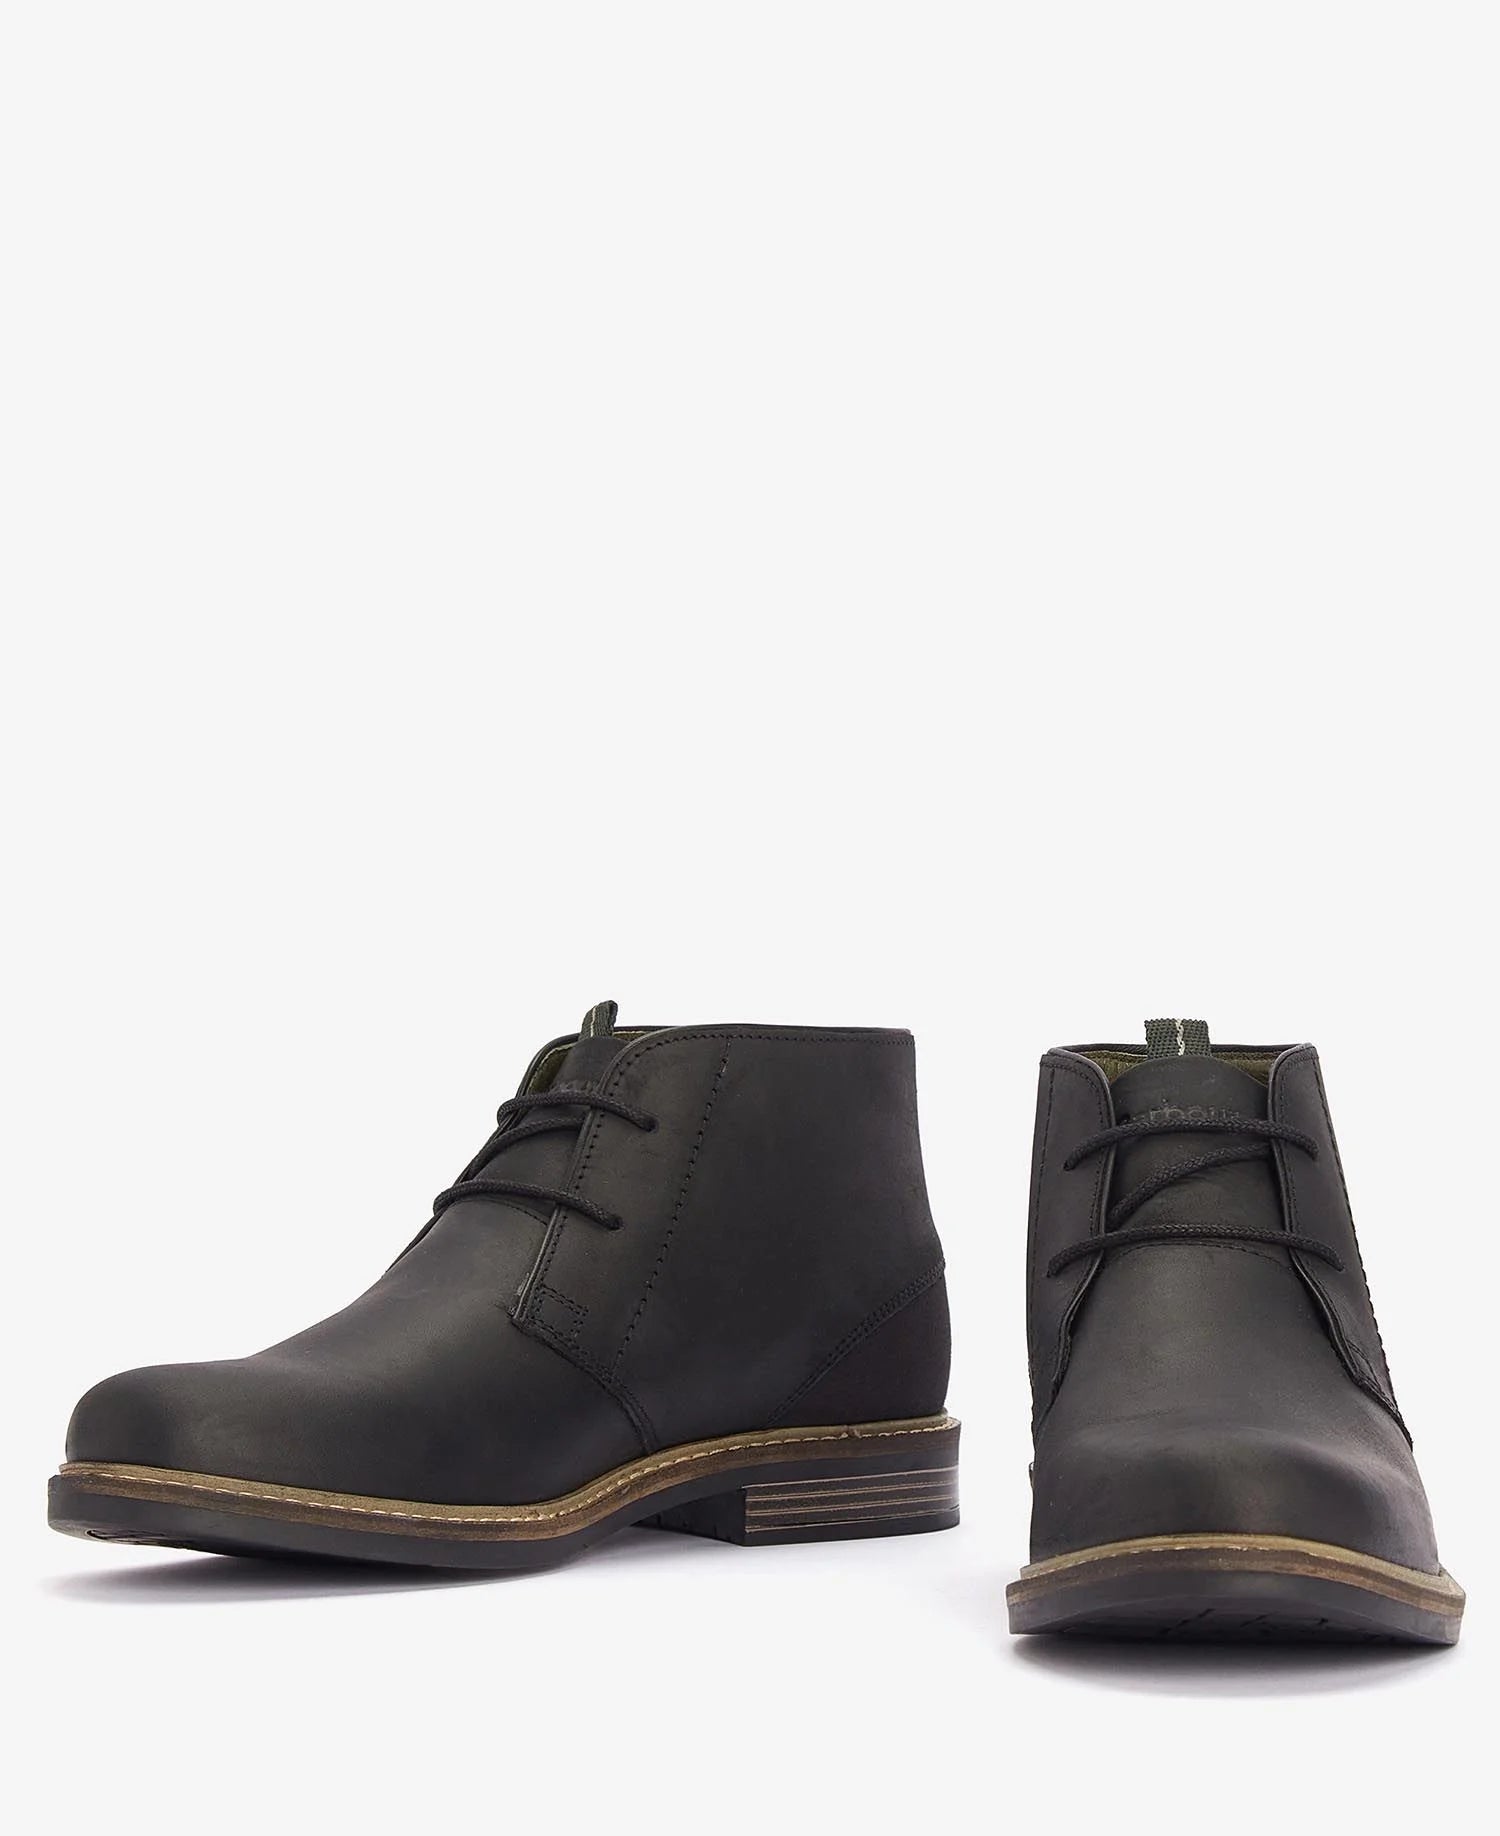 Men's Readhead Boots - Black